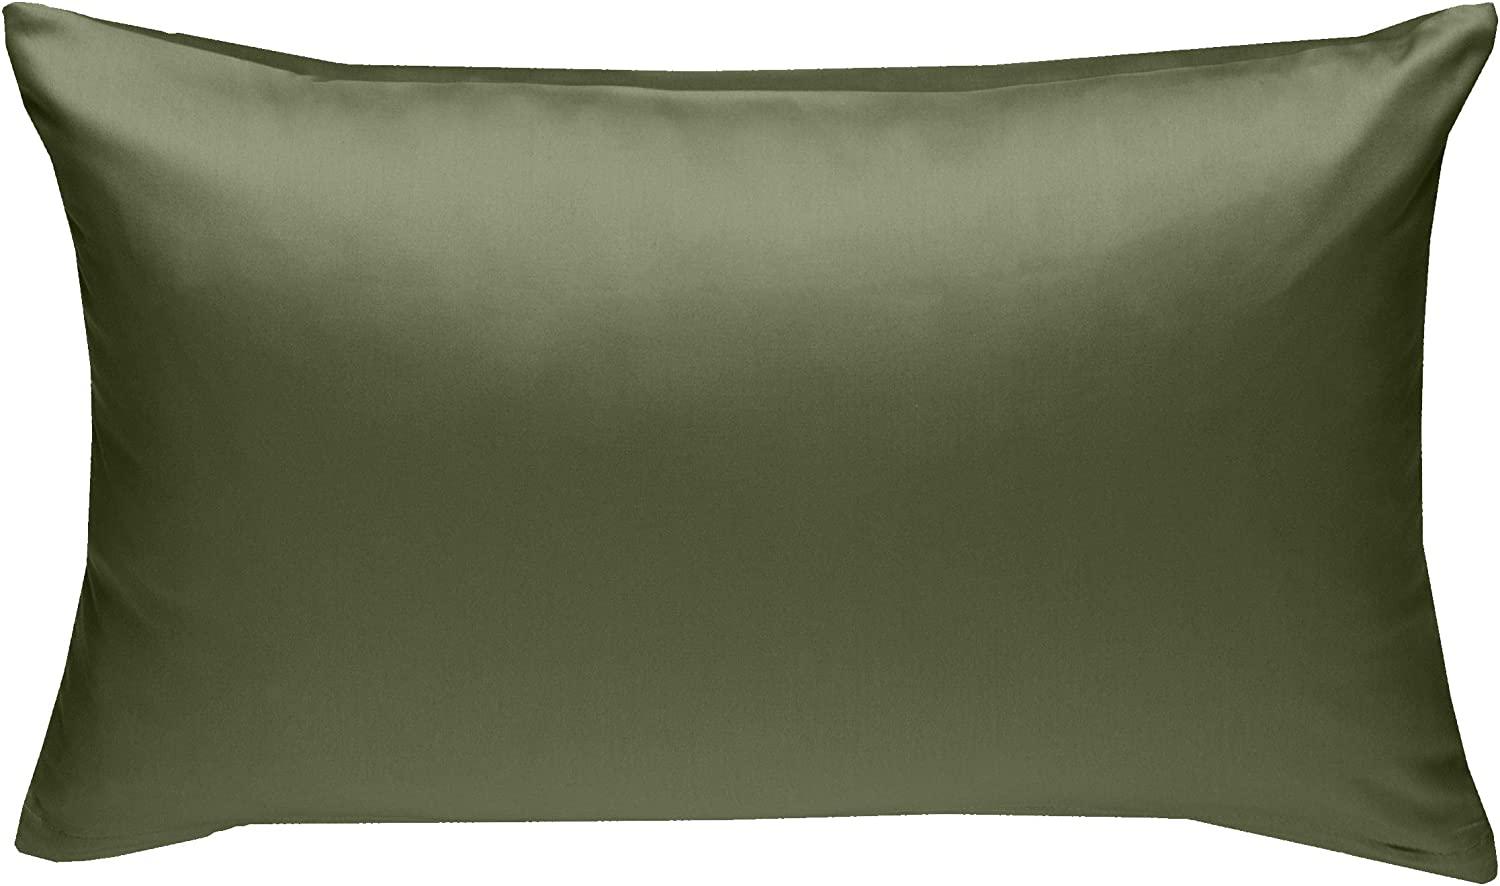 Bettwaesche-mit-Stil Mako-Satin / Baumwollsatin Bettwäsche uni / einfarbig dunkelgrün Kissenbezug 40x60 cm Bild 1